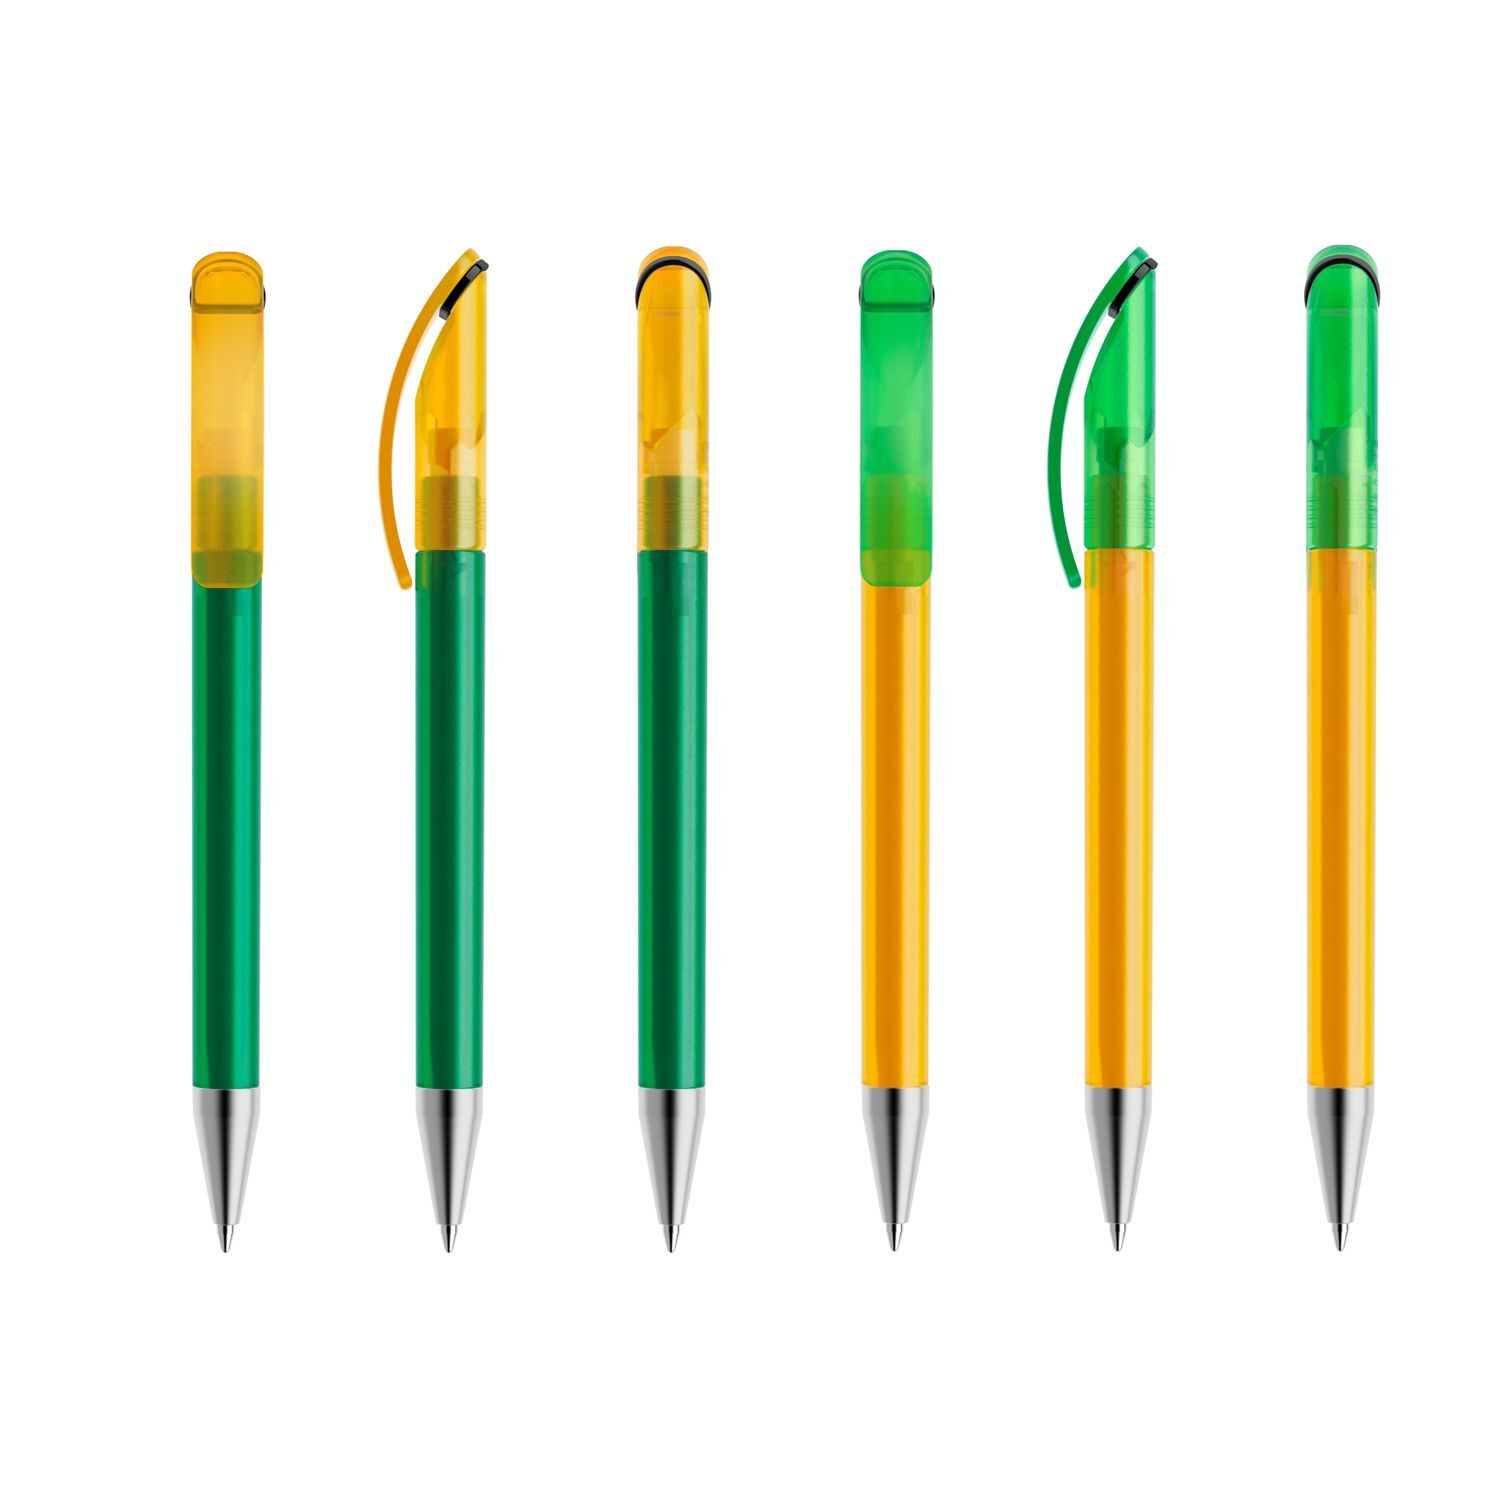 Prodir DS3 Promotional Pens